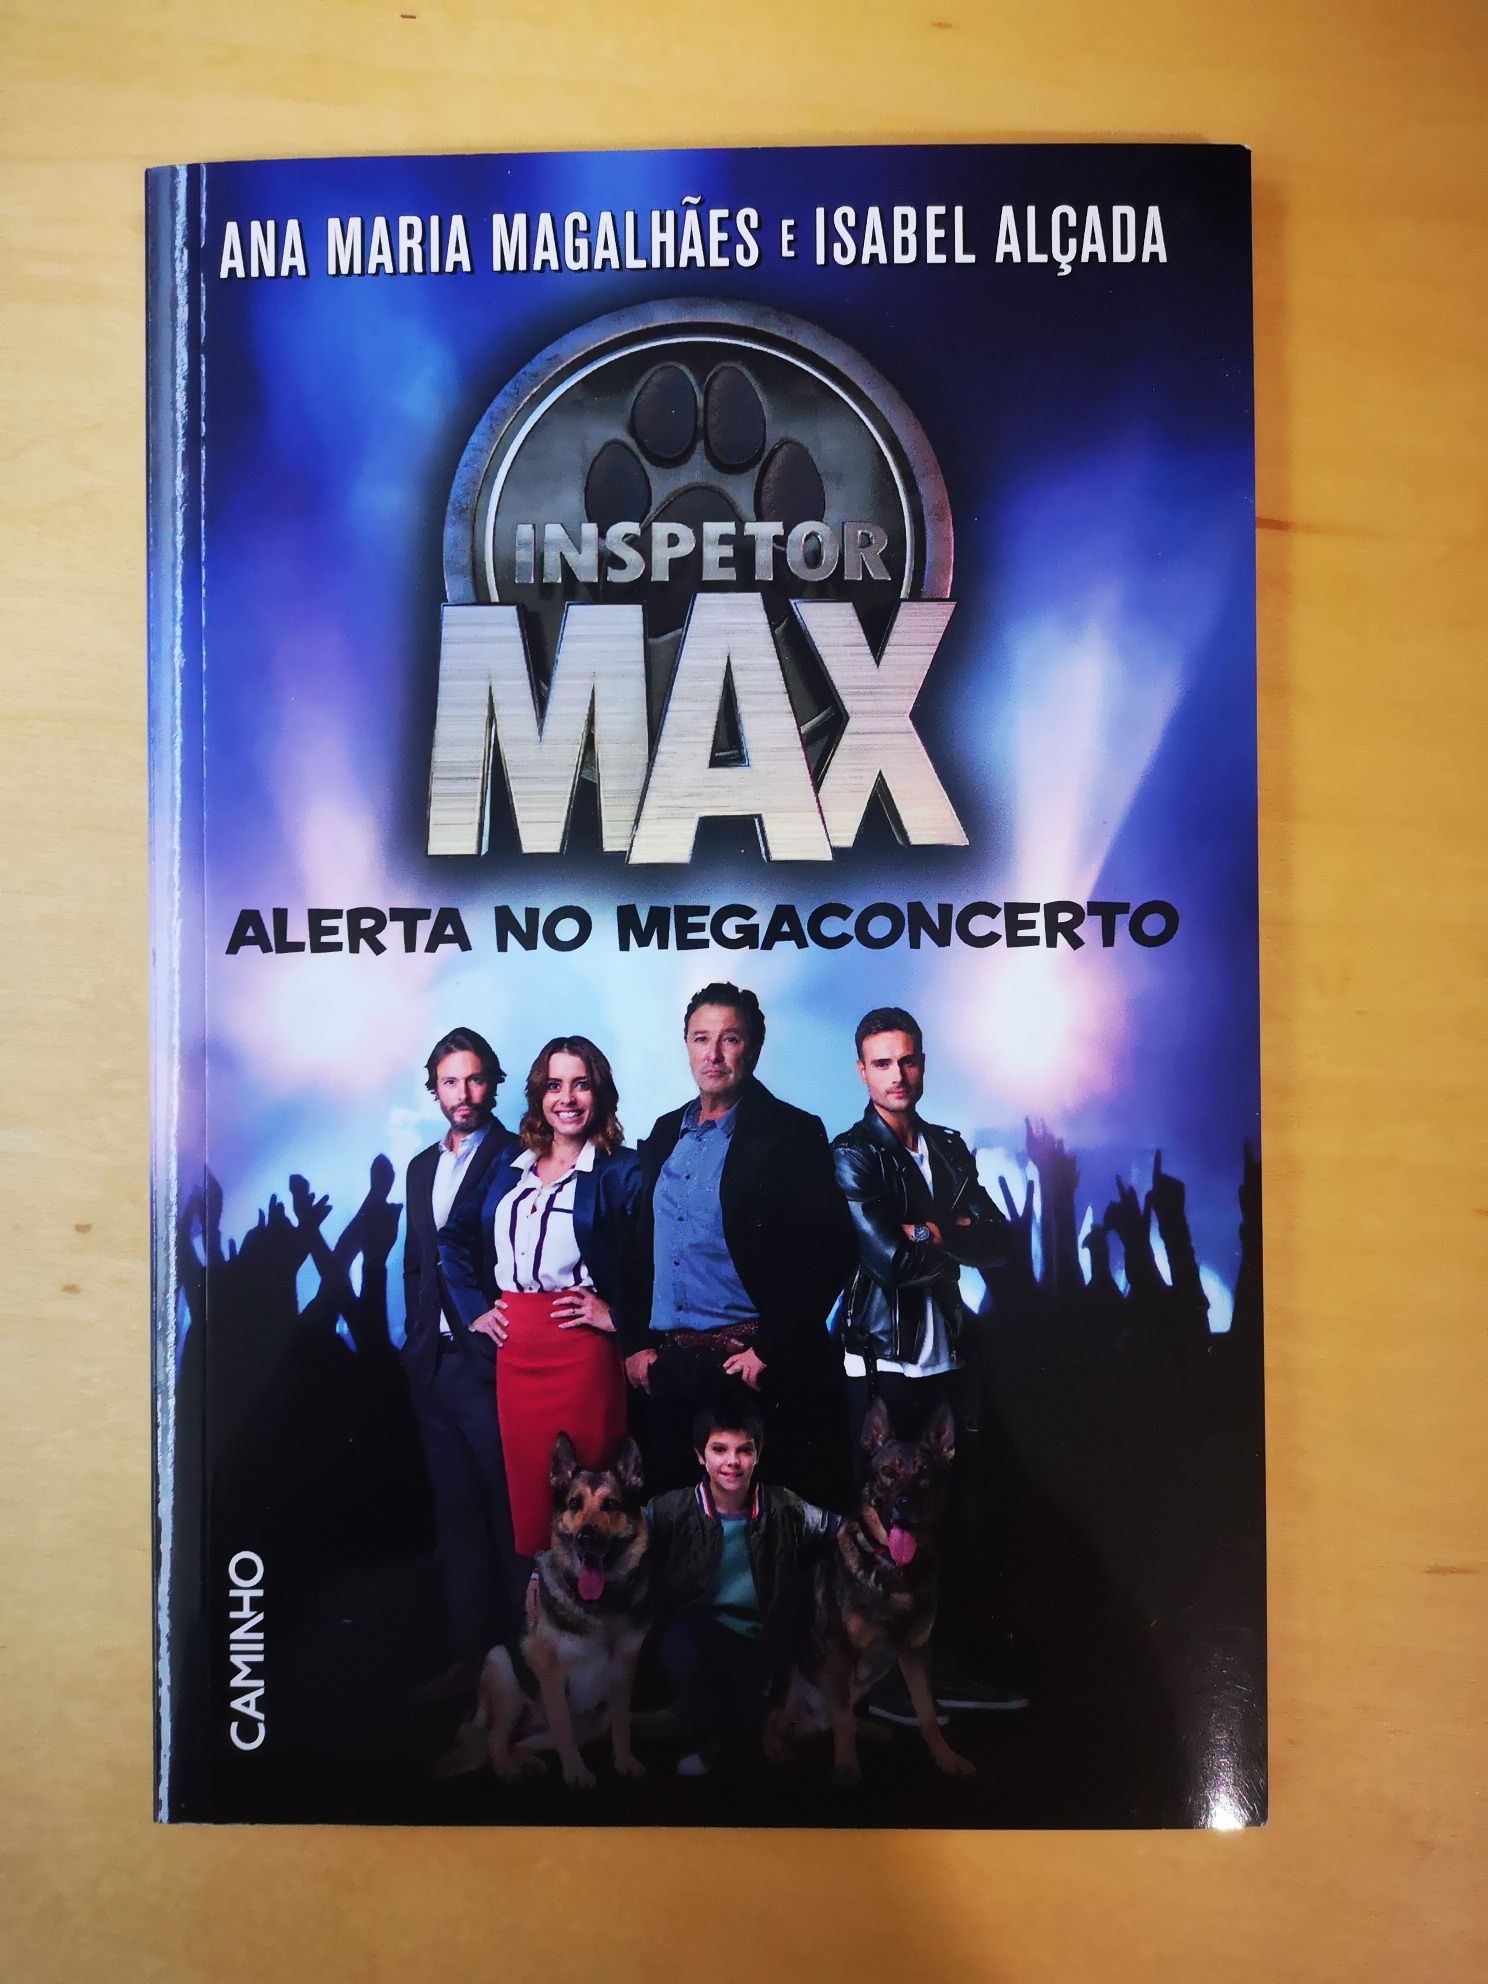 Inspetor Max - Alerta no megaconcerto